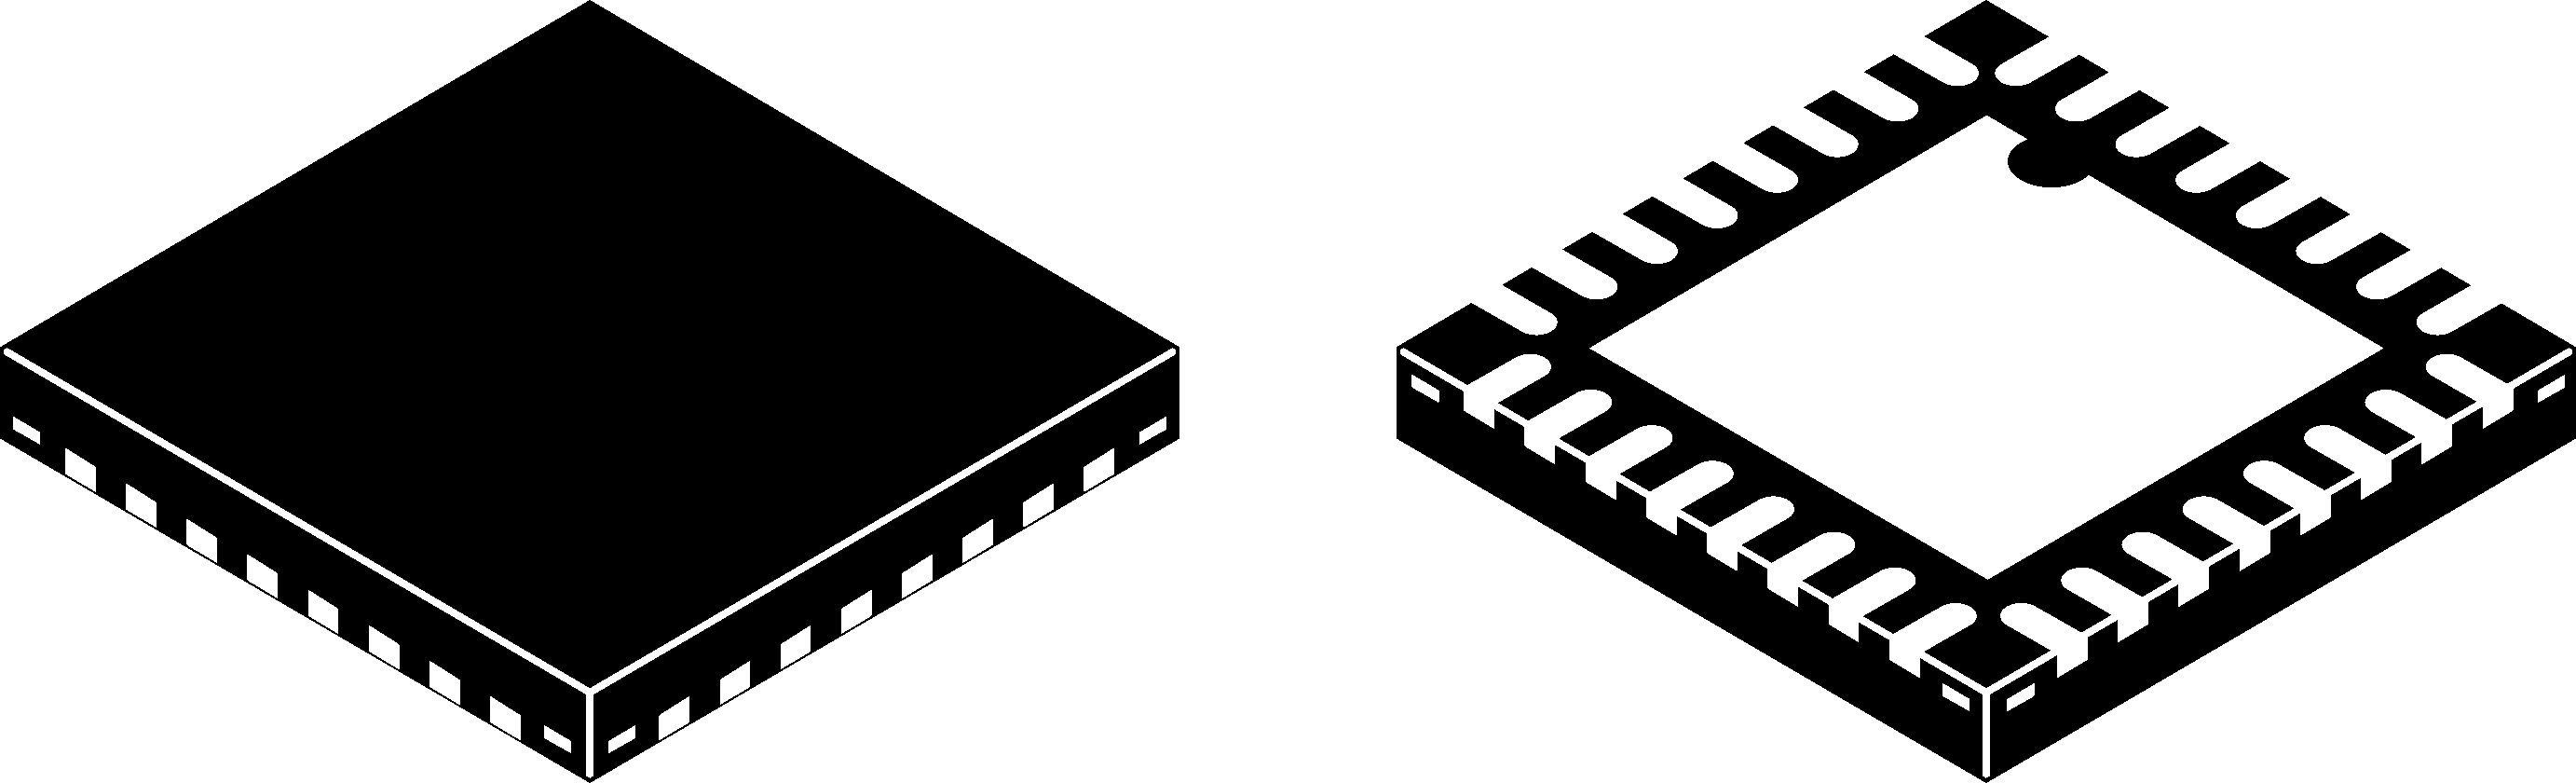 Microchip LAN8741AI-EN, Ethernet Transceiver, 10Mbps, 1.62 to 3.6 V, 32-Pin SQFN